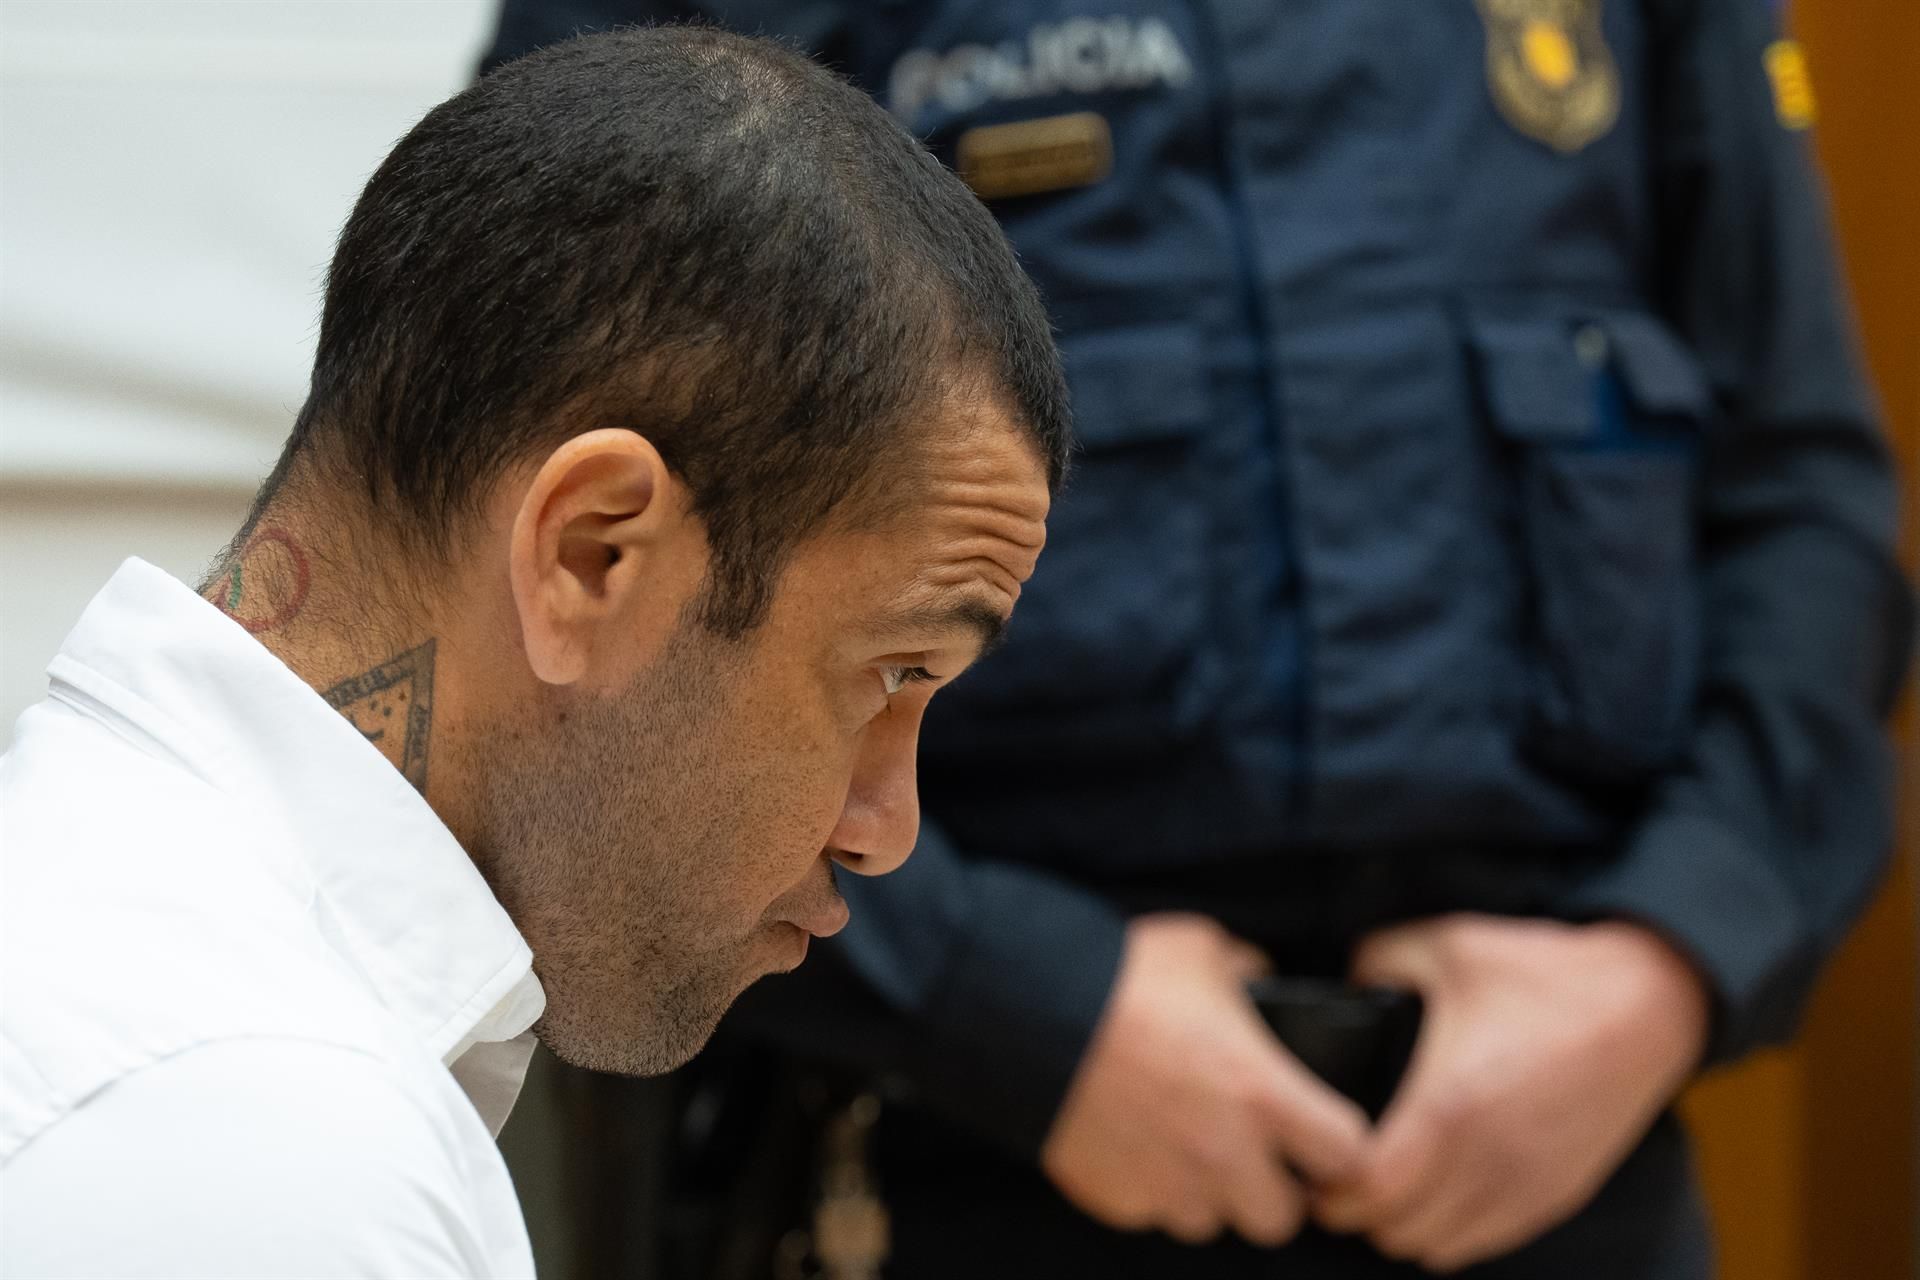 El futbolista Dani Alves, condenado a cuatro años y medio de prisión por agresión sexual. - EUROPA PRESS/D.Zorrakino. POOL - Europa Press.